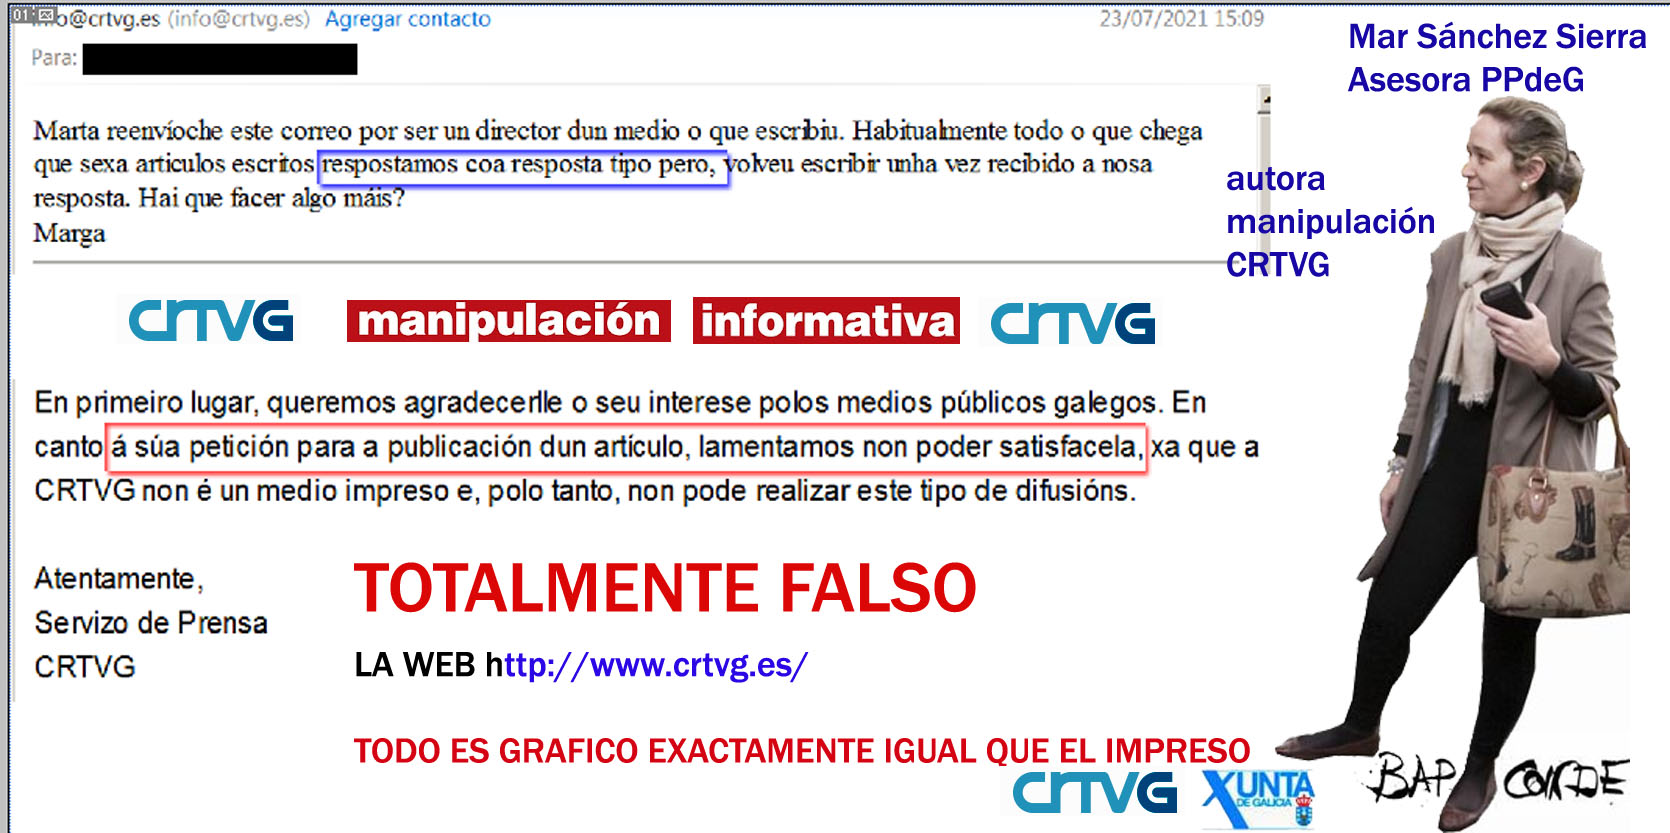 La CRTVG creó formulario proforma para responder censurando la información  pública que no gusta a Mar Sanchez Sierra asesora de comunicación del PPdeG  en la Xunta. | Xornal Galicia